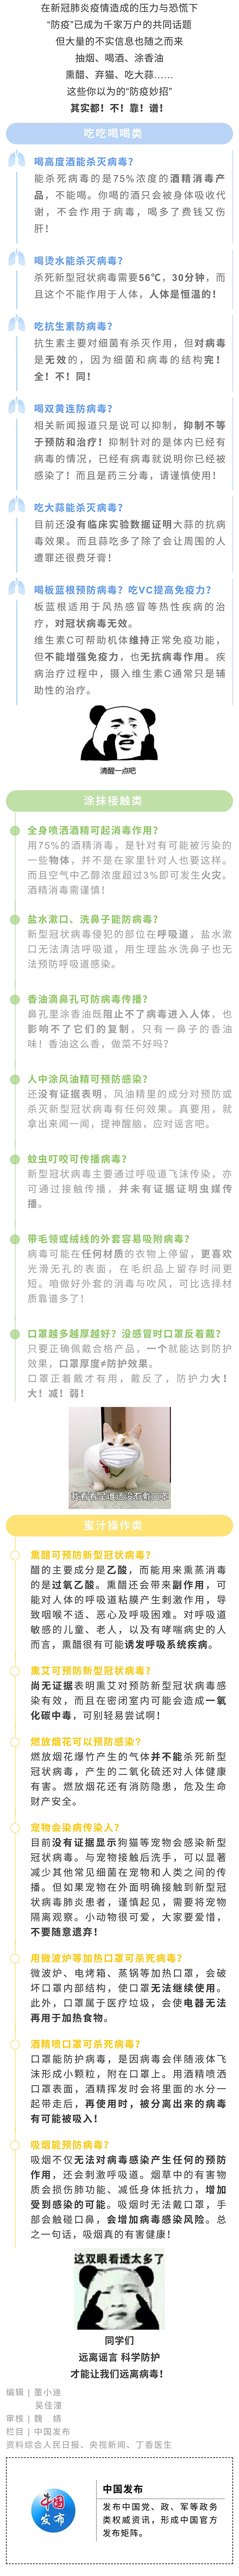 中国发布丨关于预防新冠肺炎你需要知道的20个谣言